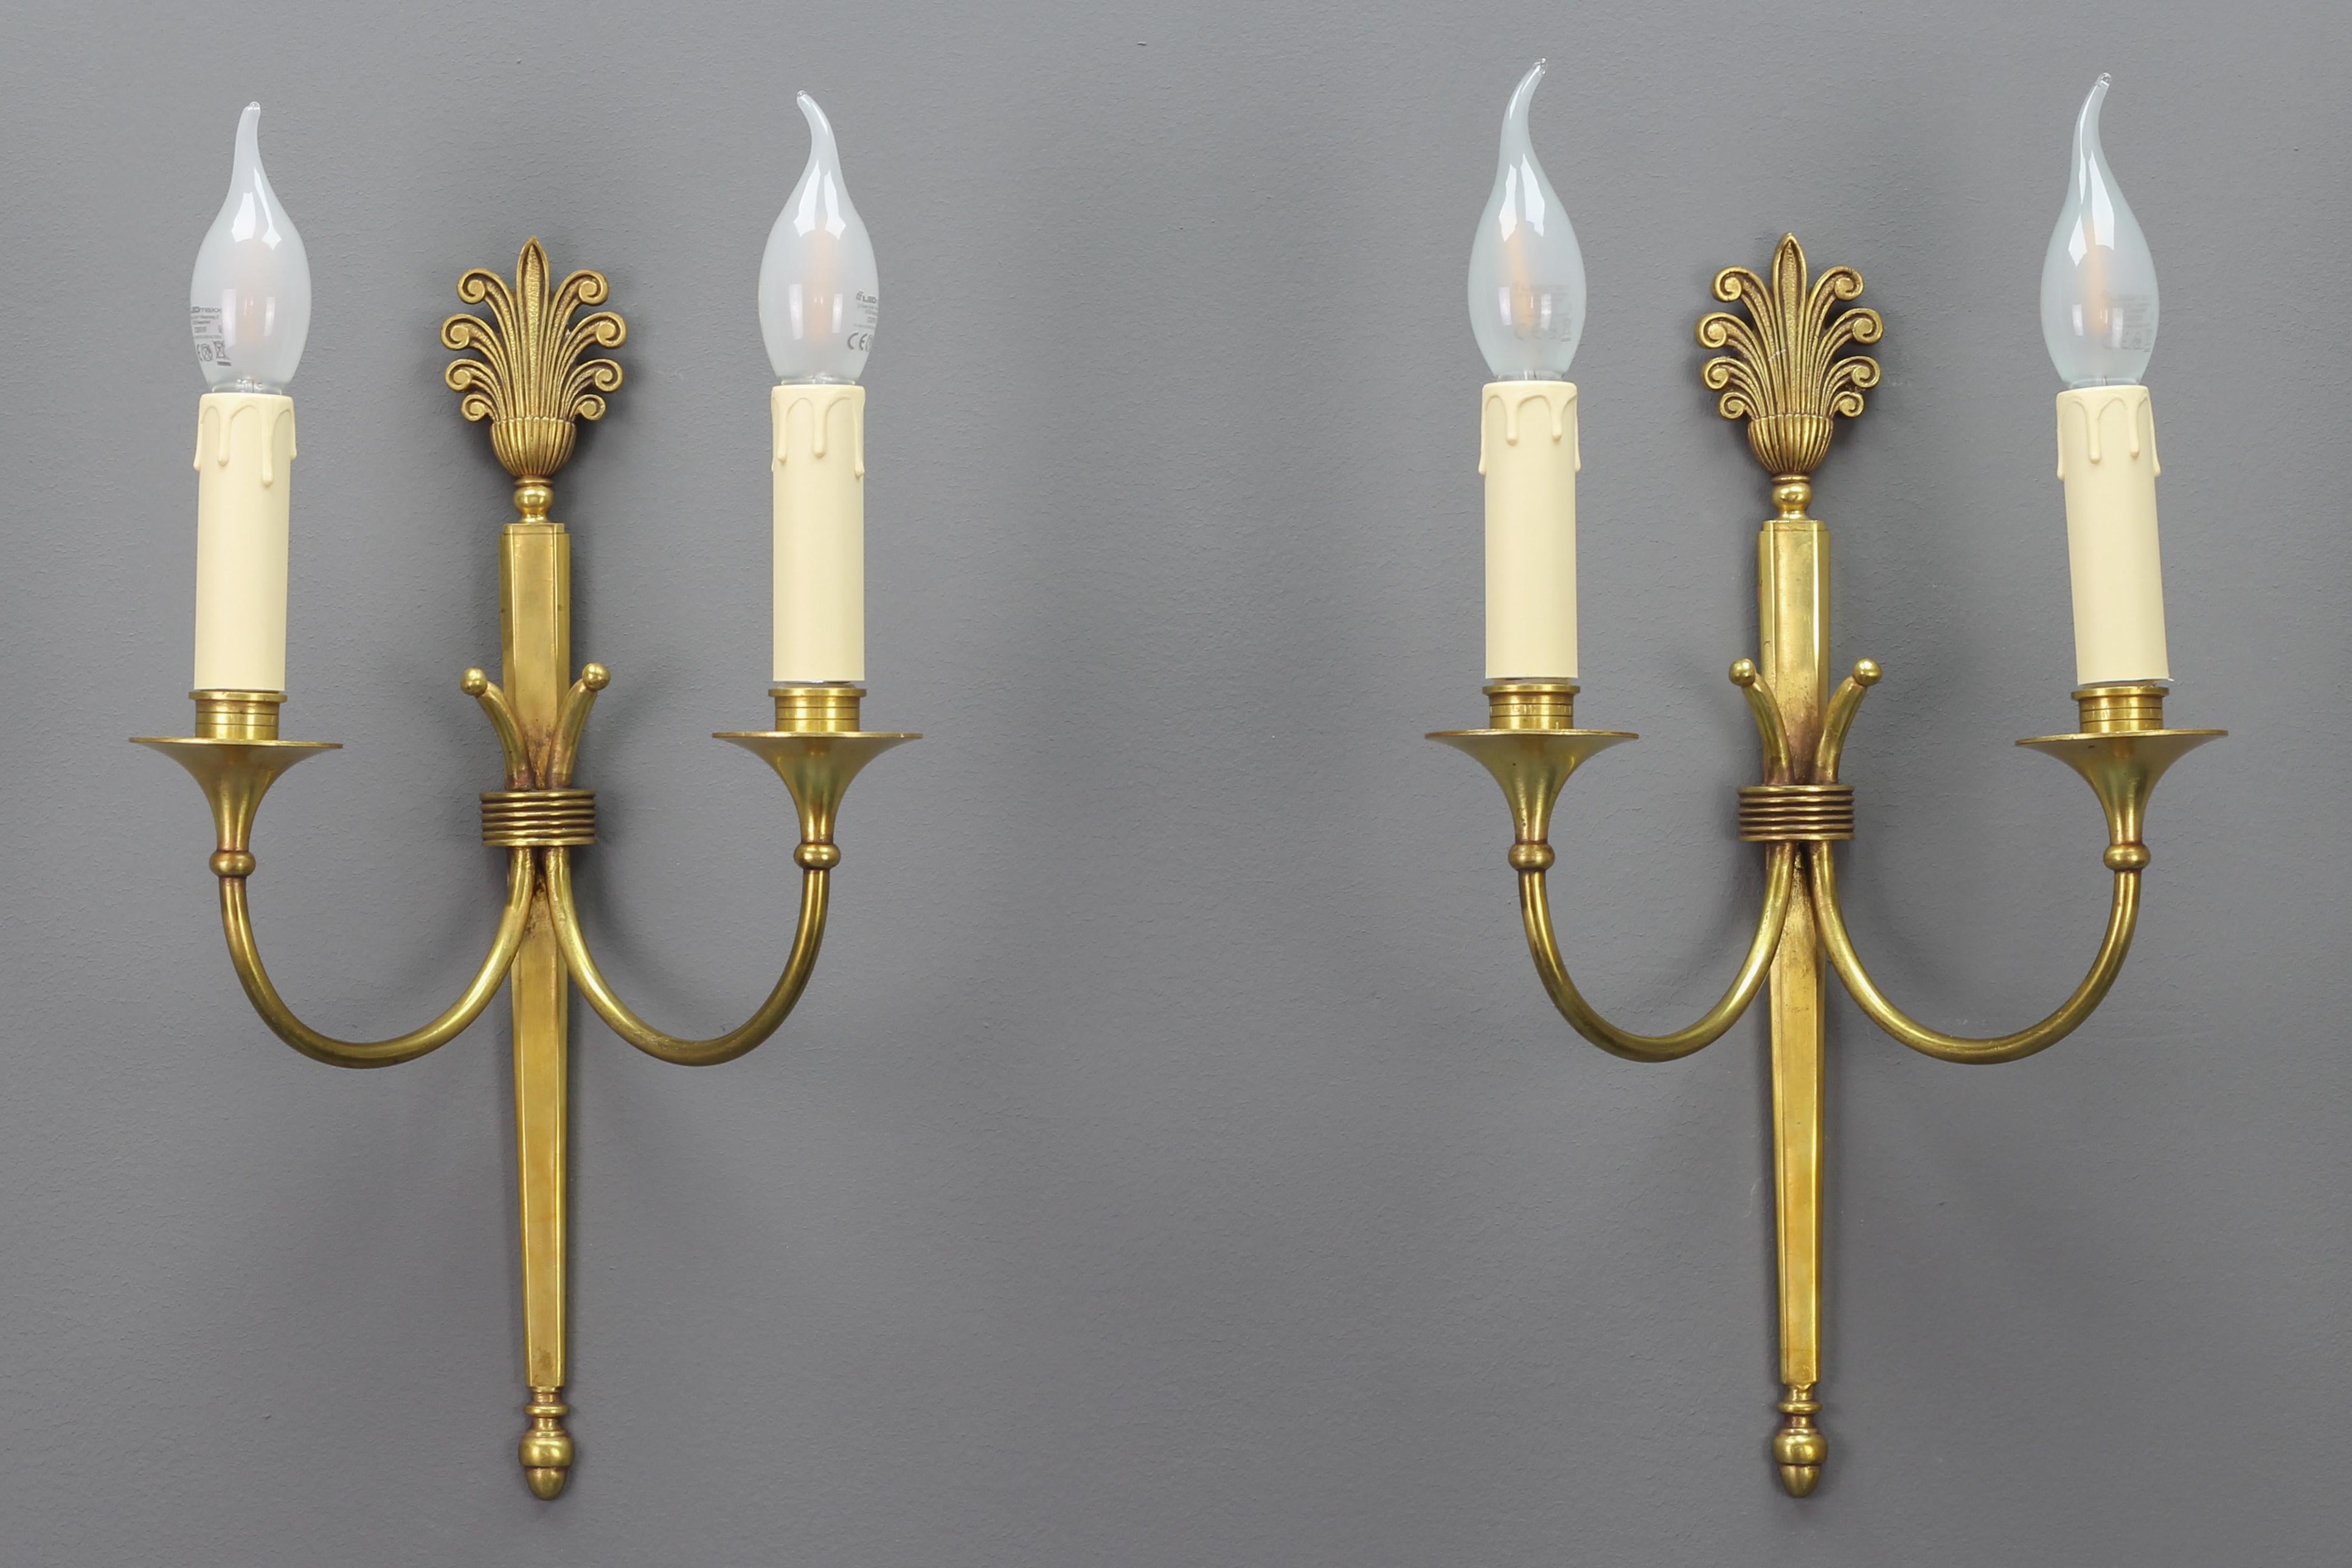 Ein Paar französischer zweiarmiger Art-Déco-Leuchter aus Messing von ca. 1930.
Dieses elegante Paar Messingleuchten hat einen schönen Messingsockel mit typischen Art-Déco-Dekoren. Jede Leuchte hat zwei Arme mit je einer Fassung für eine Glühbirne